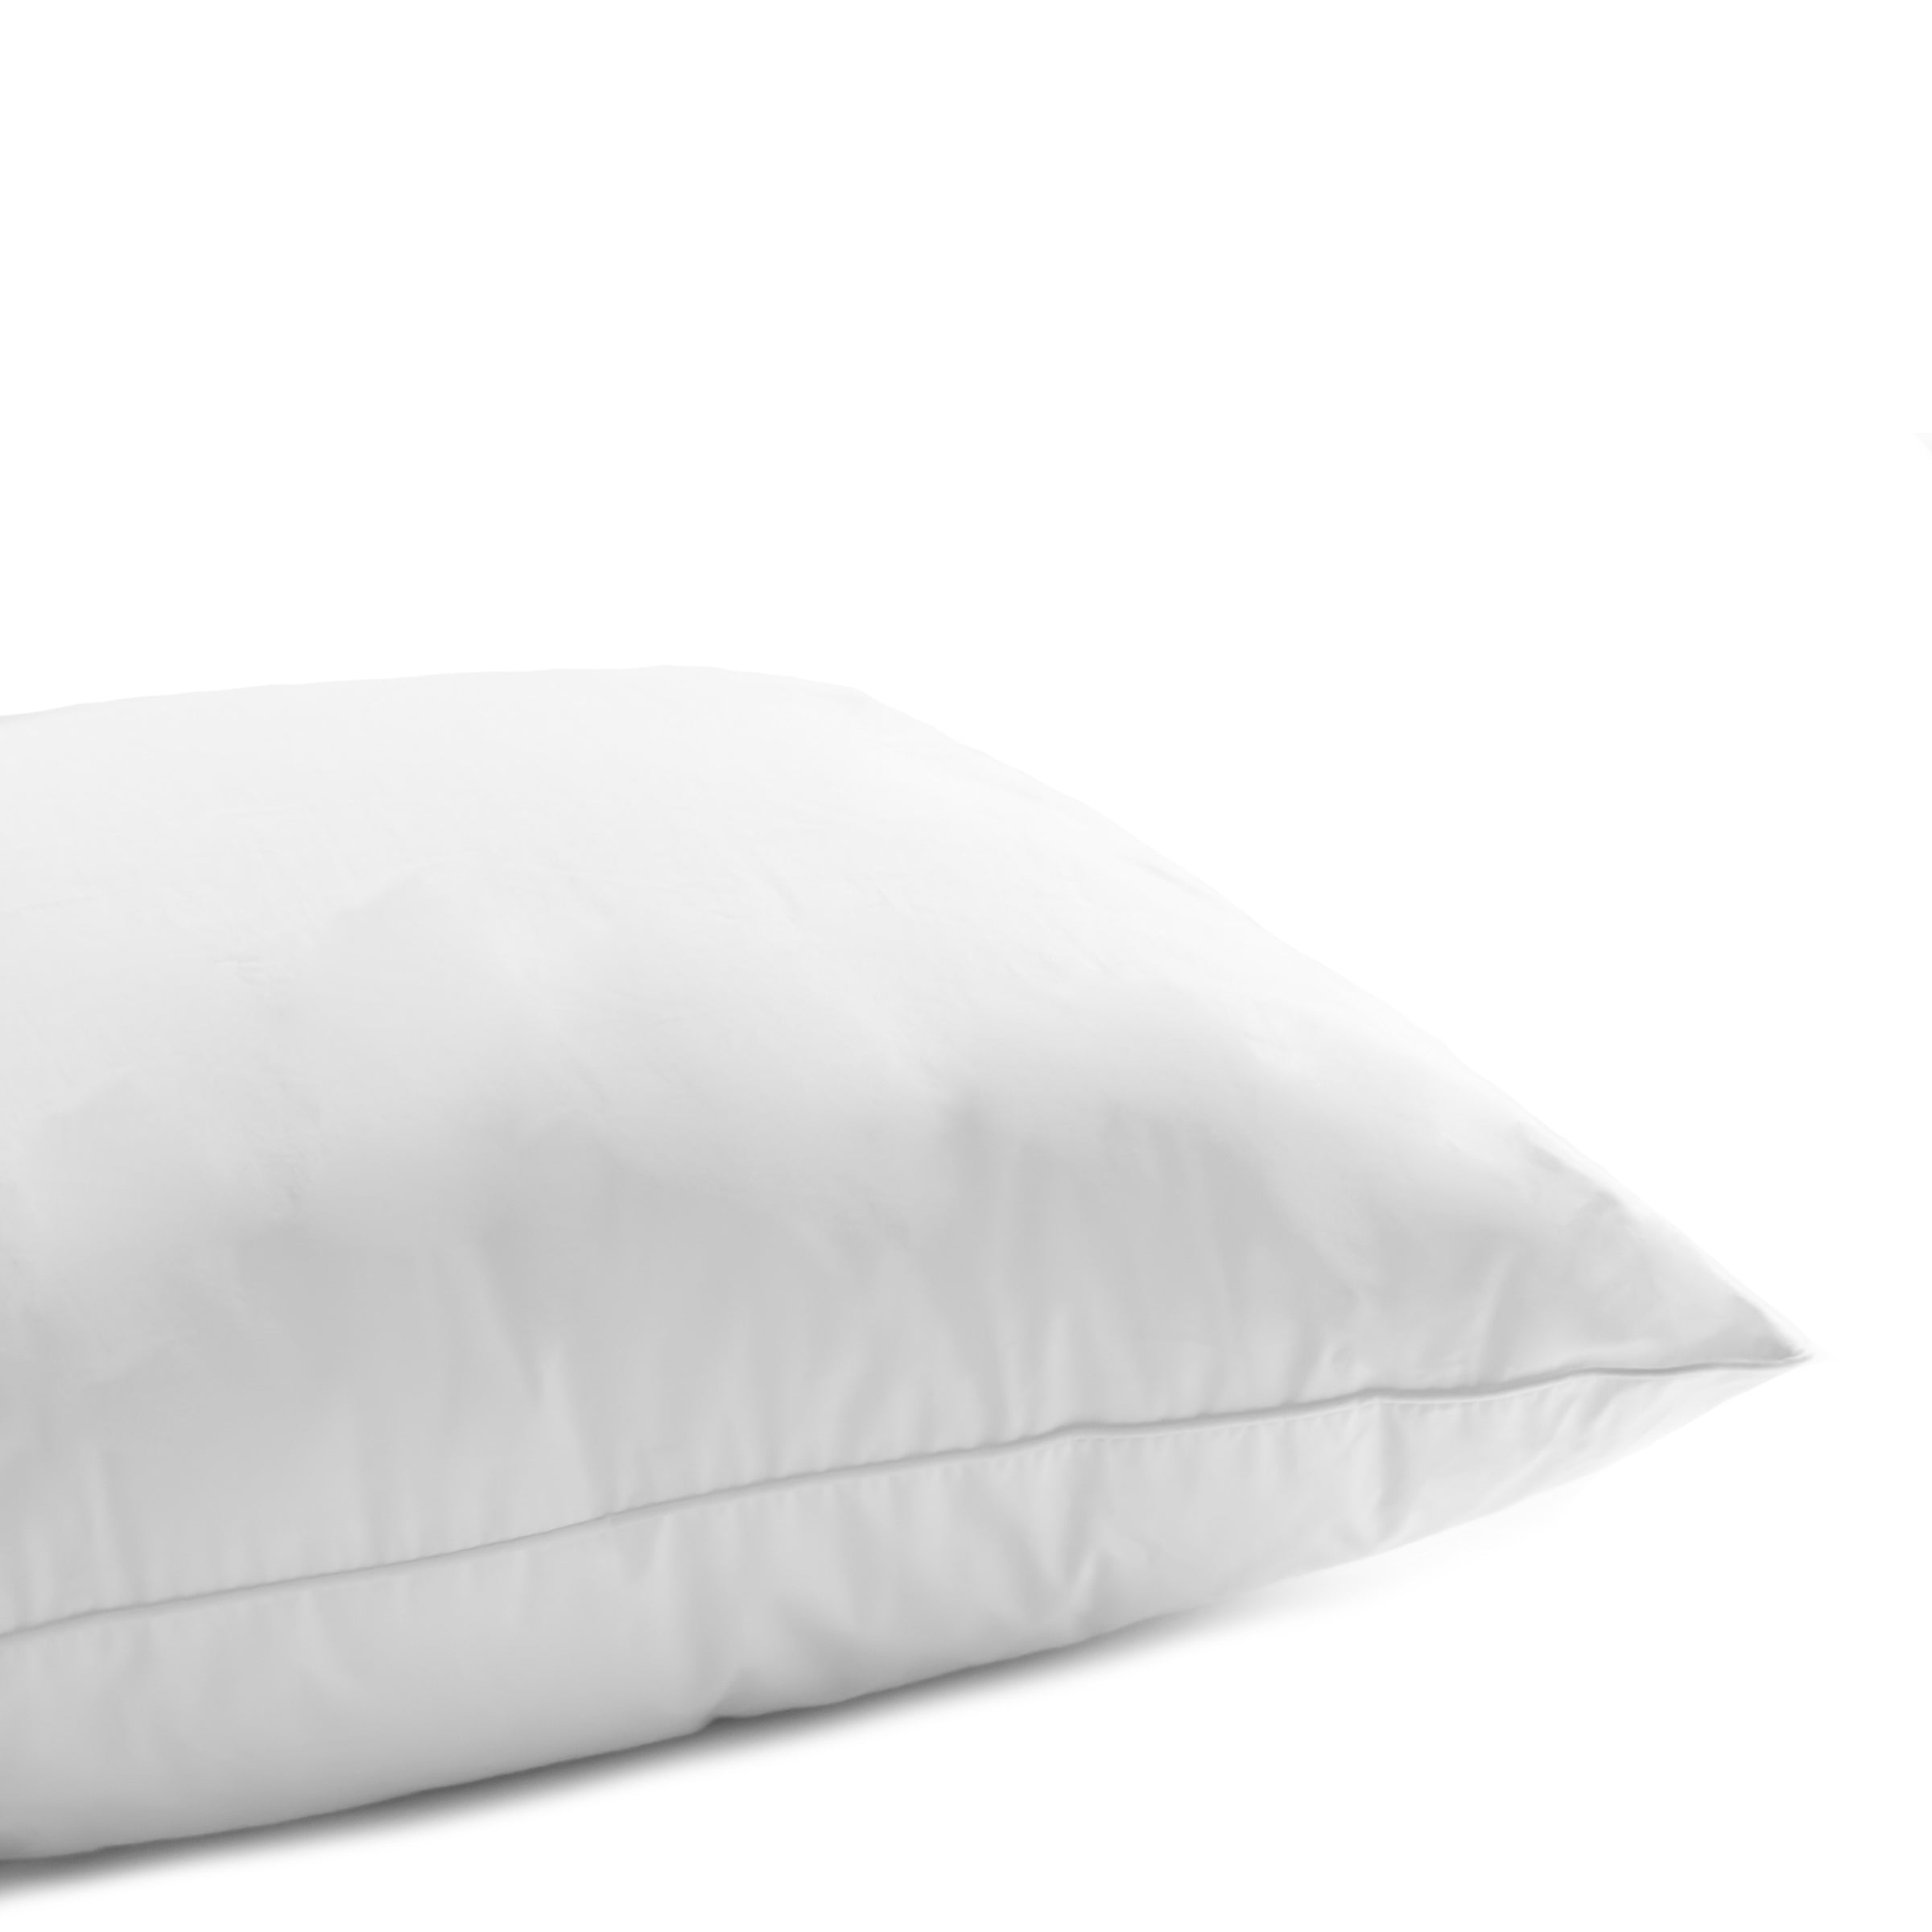 Cloud 650+ White Down Pillow